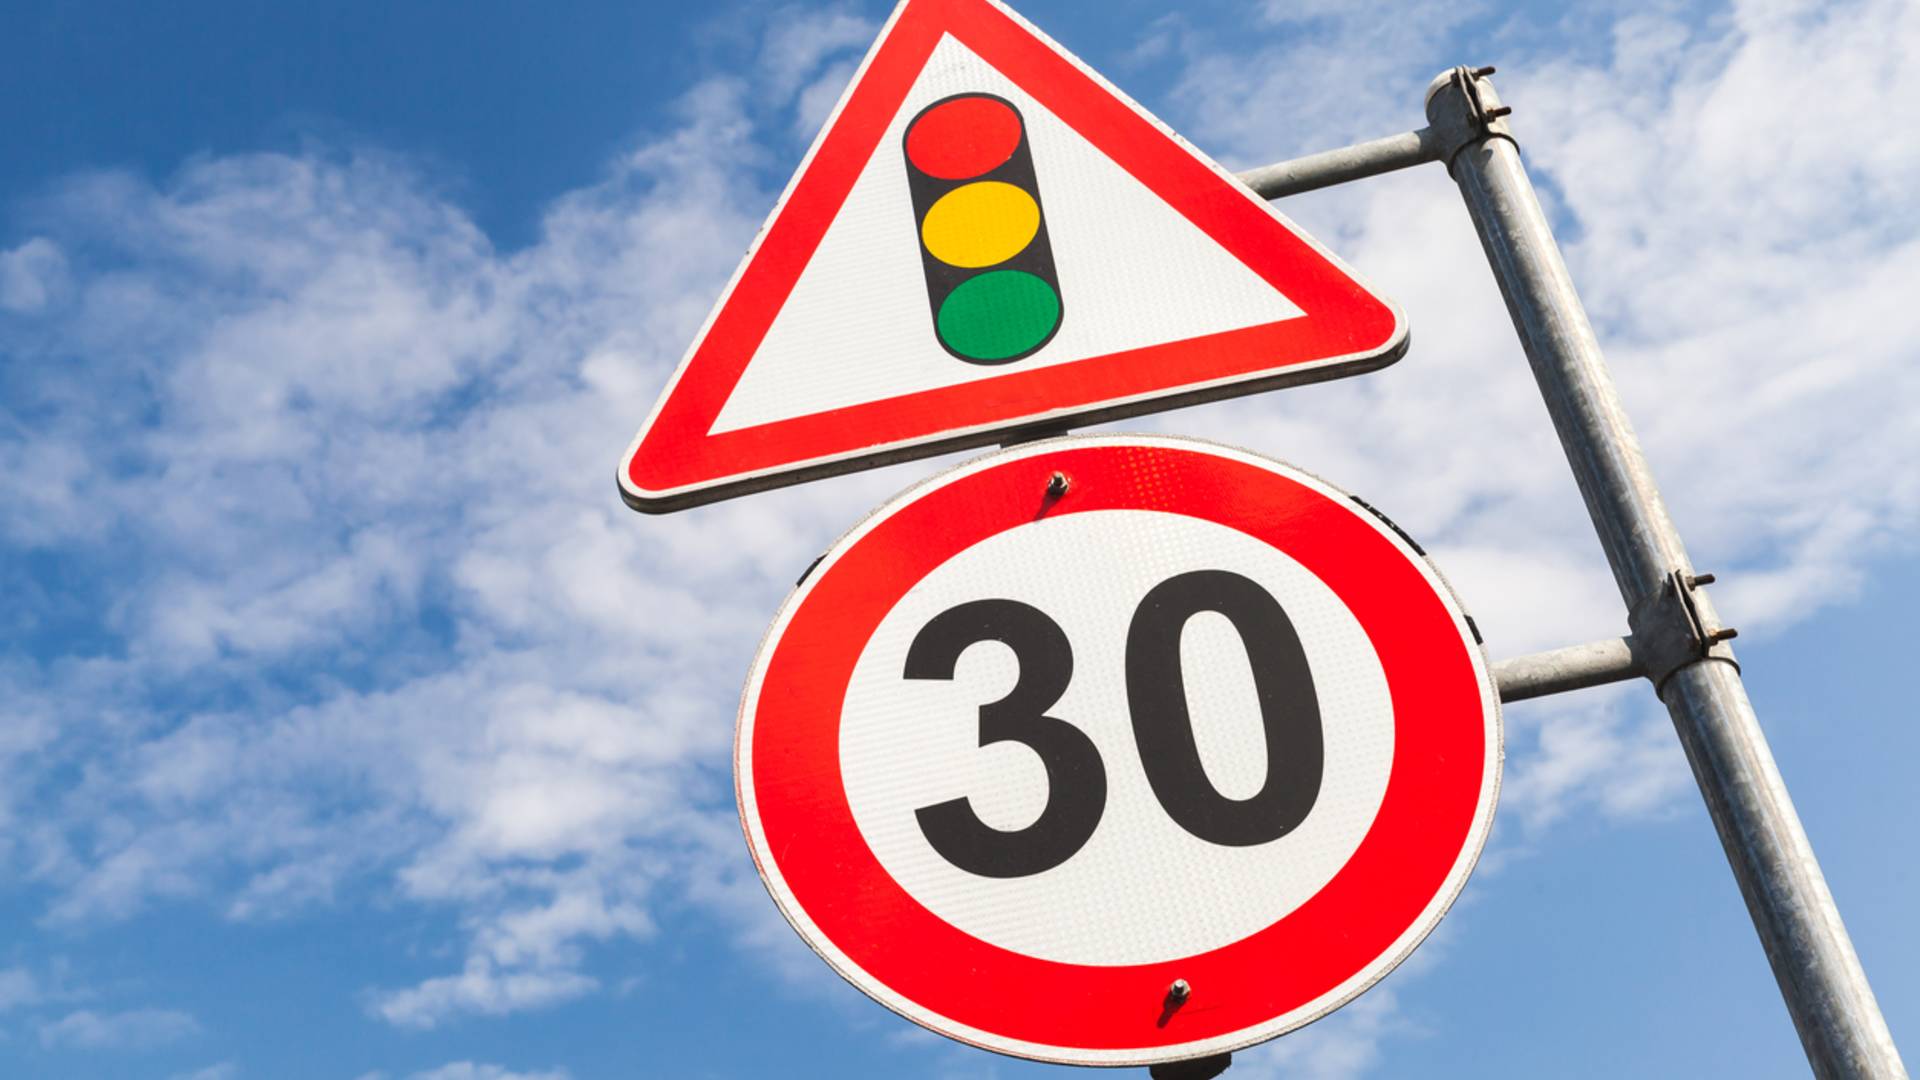 5 أنواع من إشارات المرور التي يجب أن يعرفها أولئك الذين يسافرون كثيرا